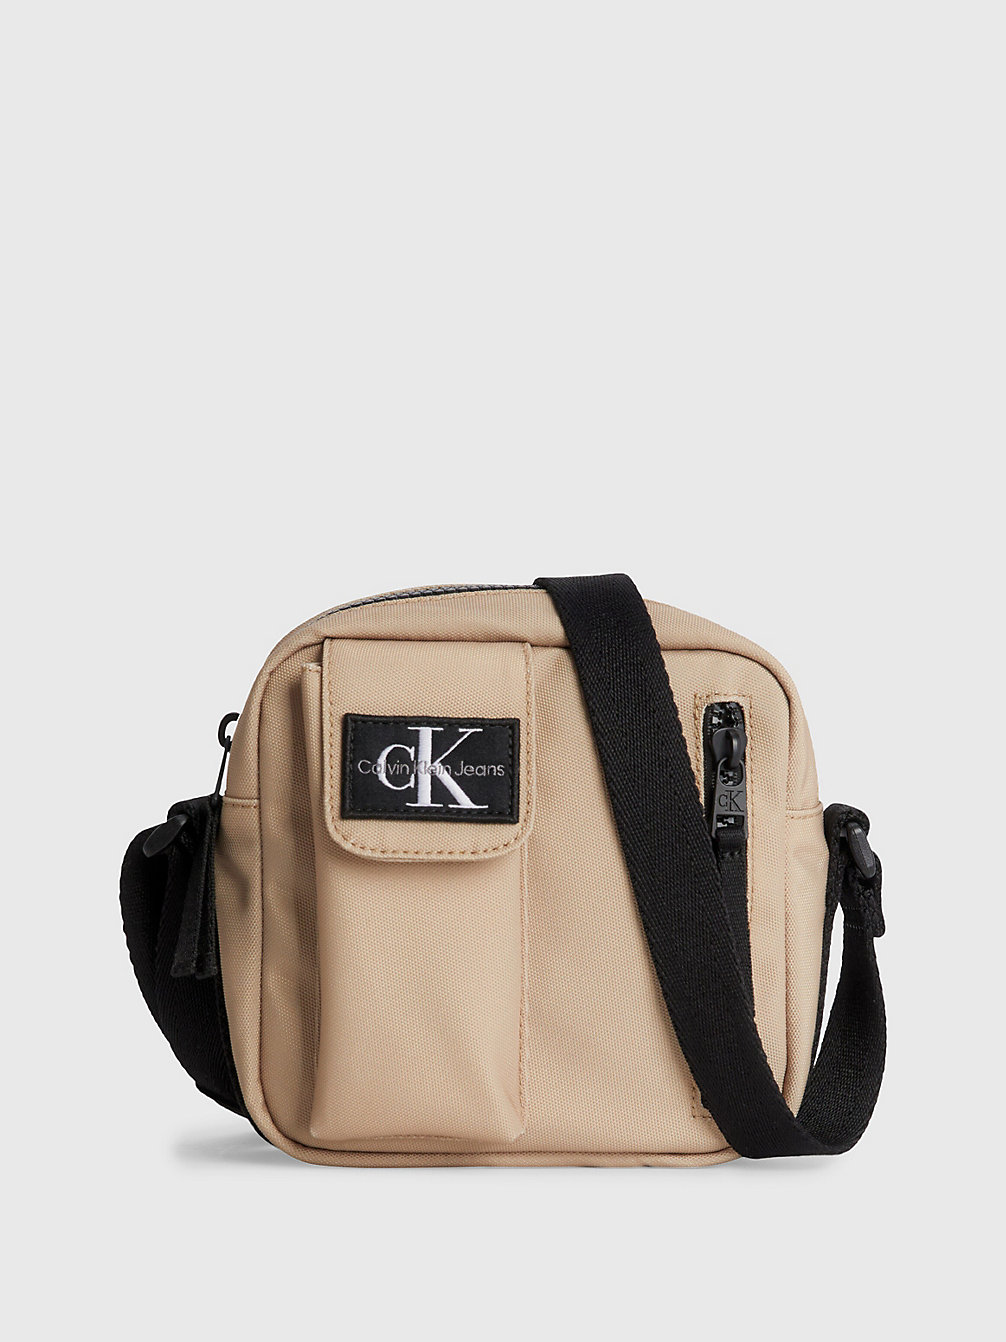 TRAVERTINE Unisex Crossover Bag undefined kids unisex Calvin Klein